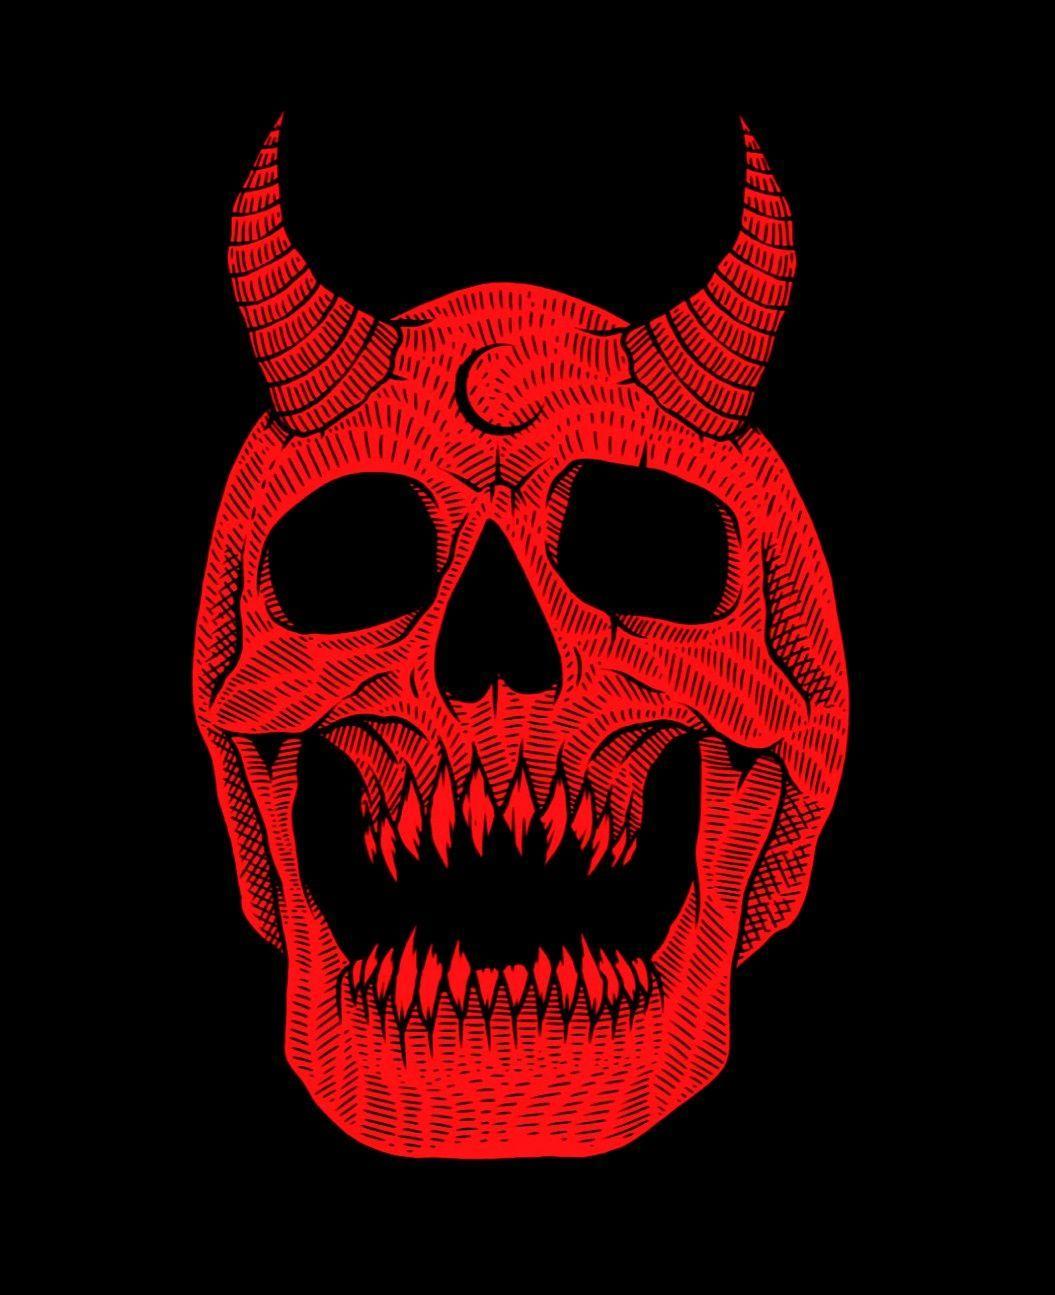 1055x1295 Một đầu lâu màu đỏ.  Skeletons vào năm 2019. Thẩm mỹ màu đỏ, nghệ thuật Satan